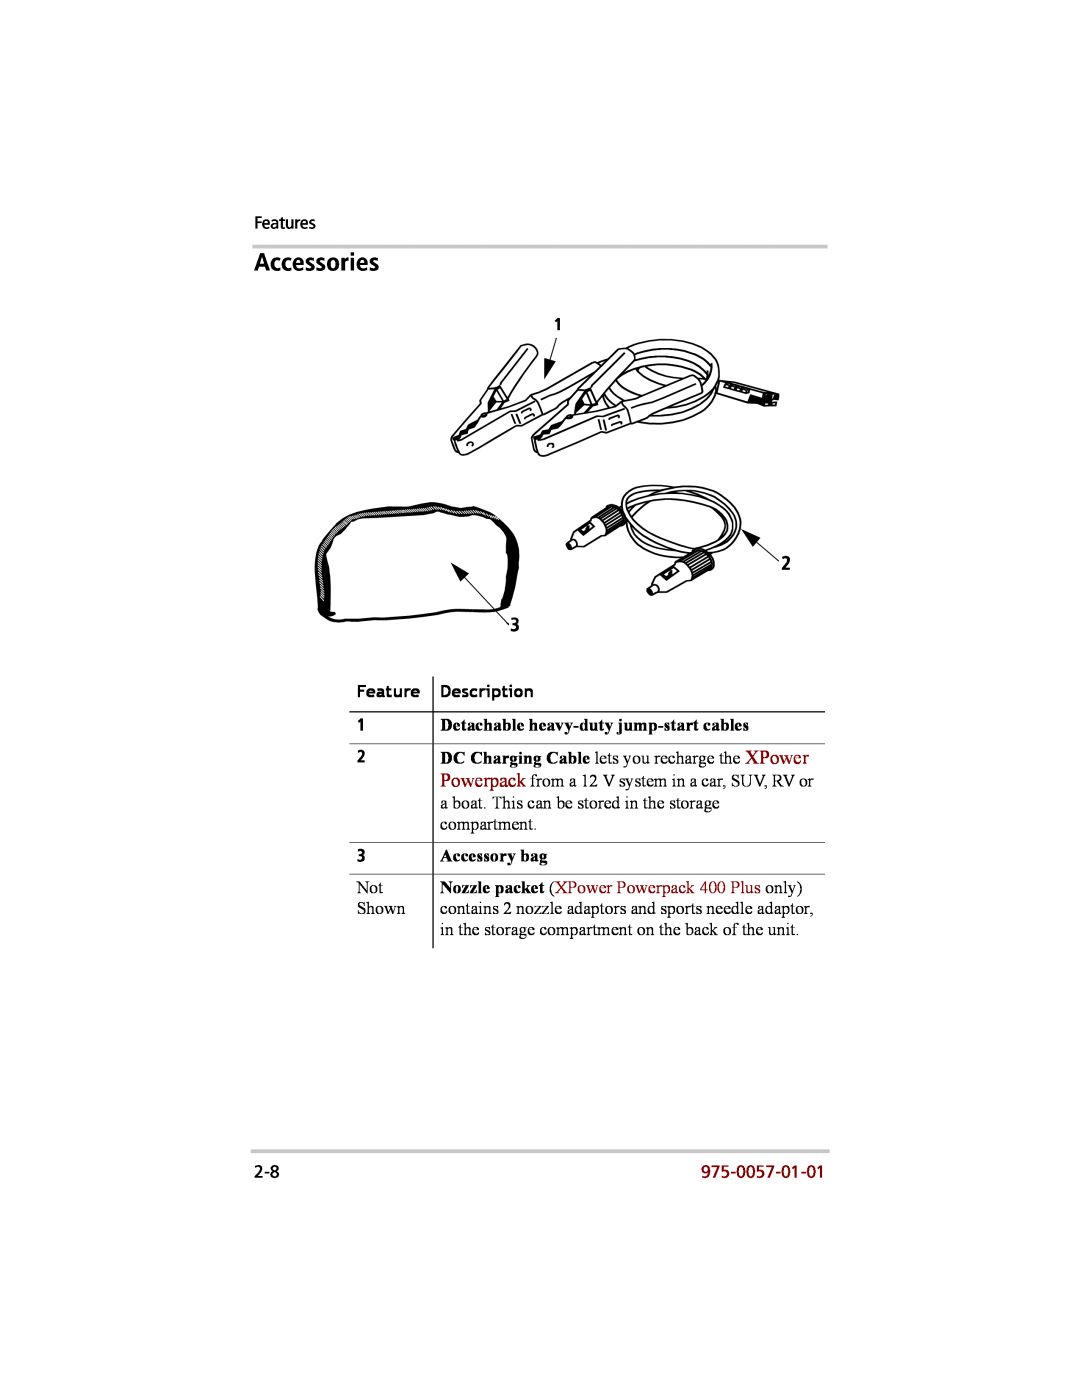 Xantrex Technology 200 manual Accessories, Feature Description, Detachable heavy-duty jump-start cables, Accessory bag 